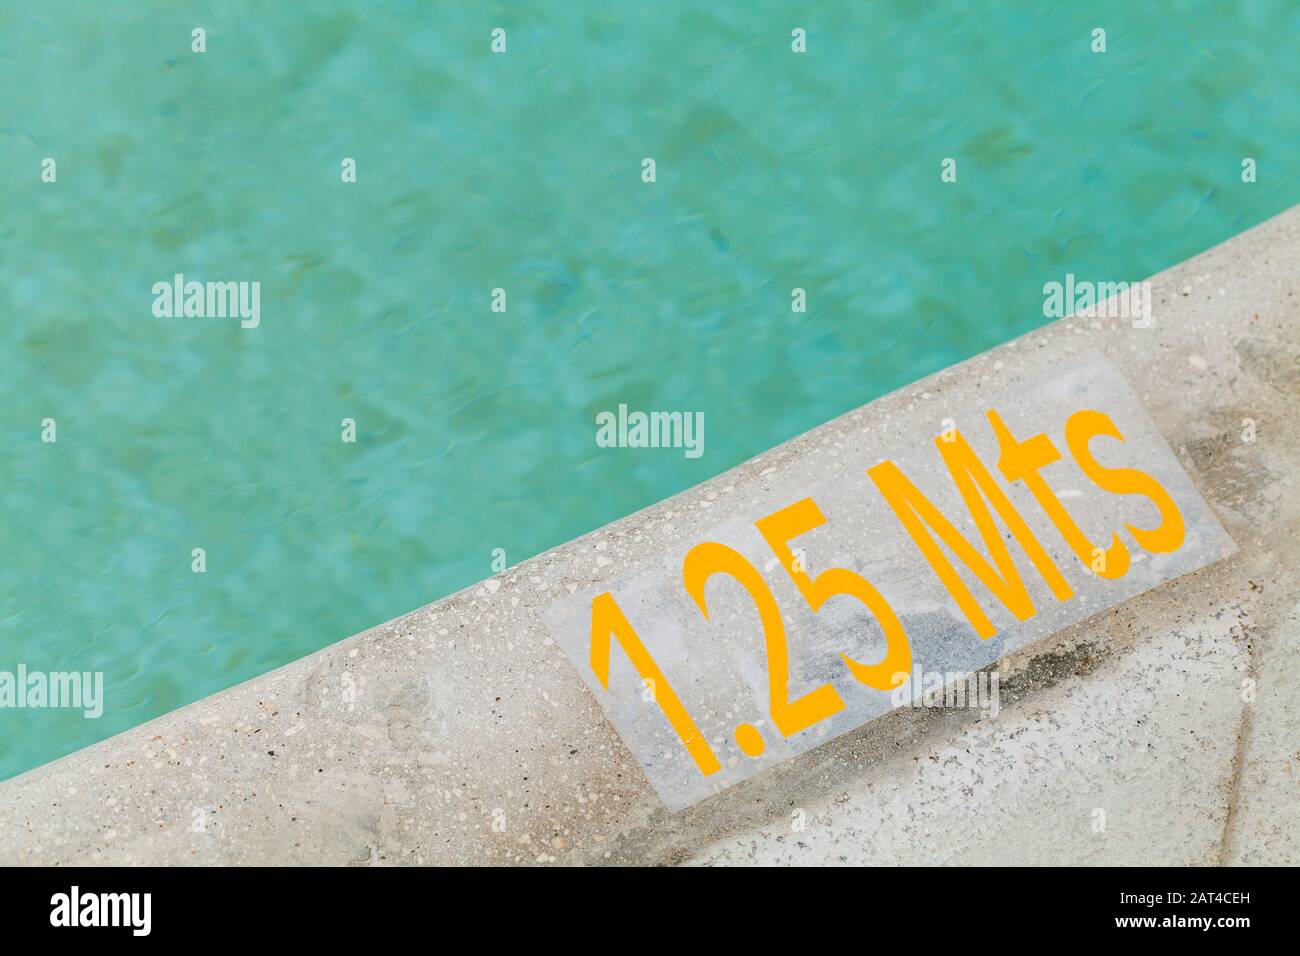 1,25 metri di profondità, testo di avvertimento giallo su un bordo della piscina Foto Stock